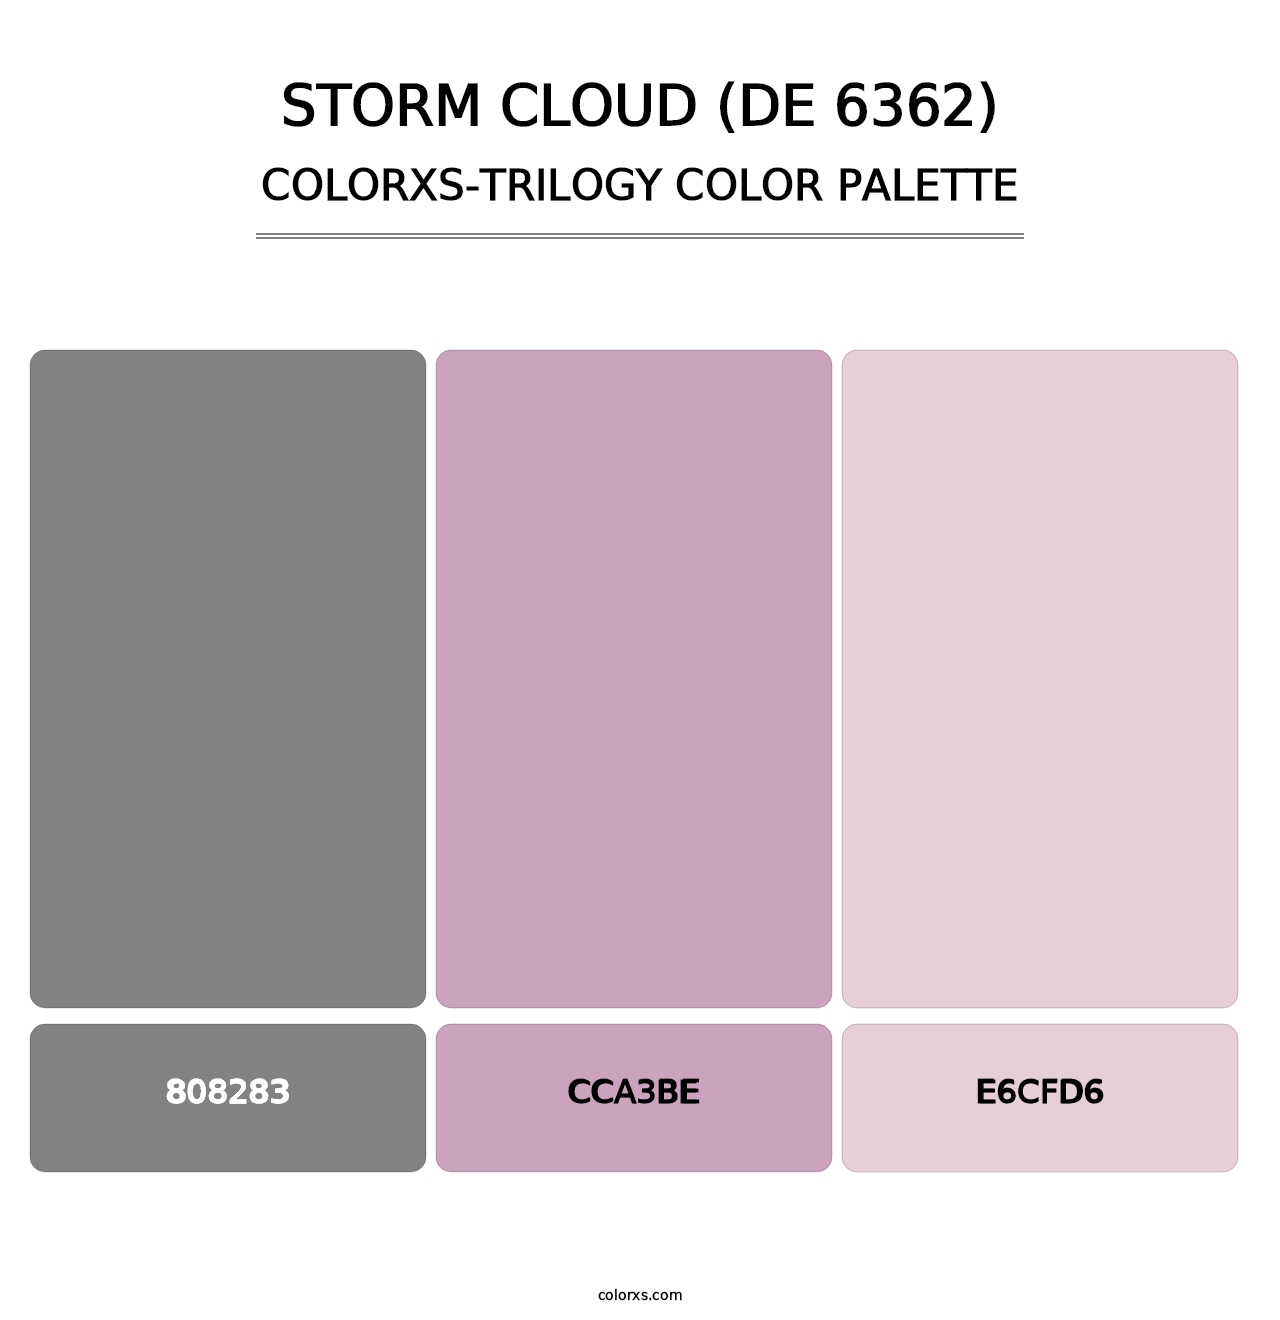 Storm Cloud (DE 6362) - Colorxs Trilogy Palette